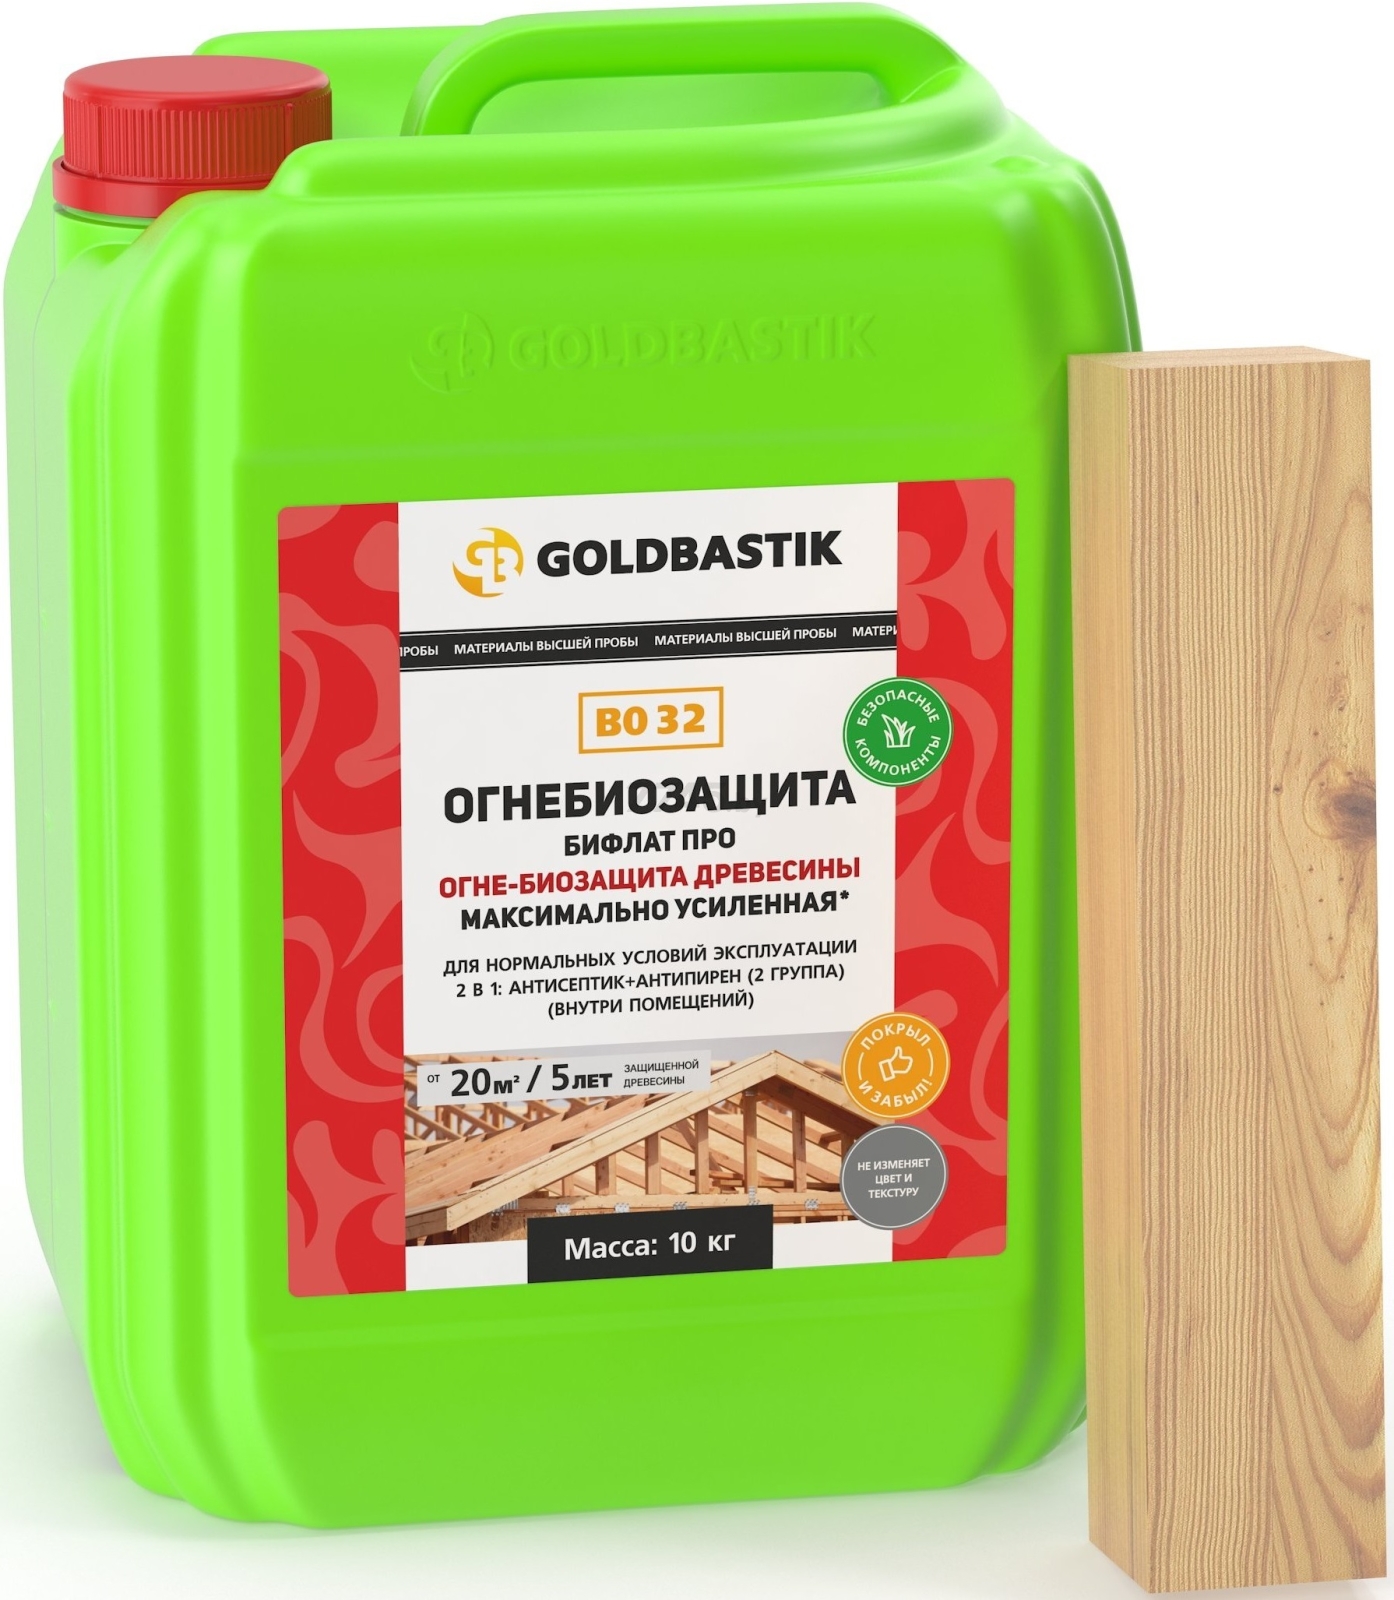 Антисептик GOLDBASTIK Бифлат Про 10 кг (BO 32)